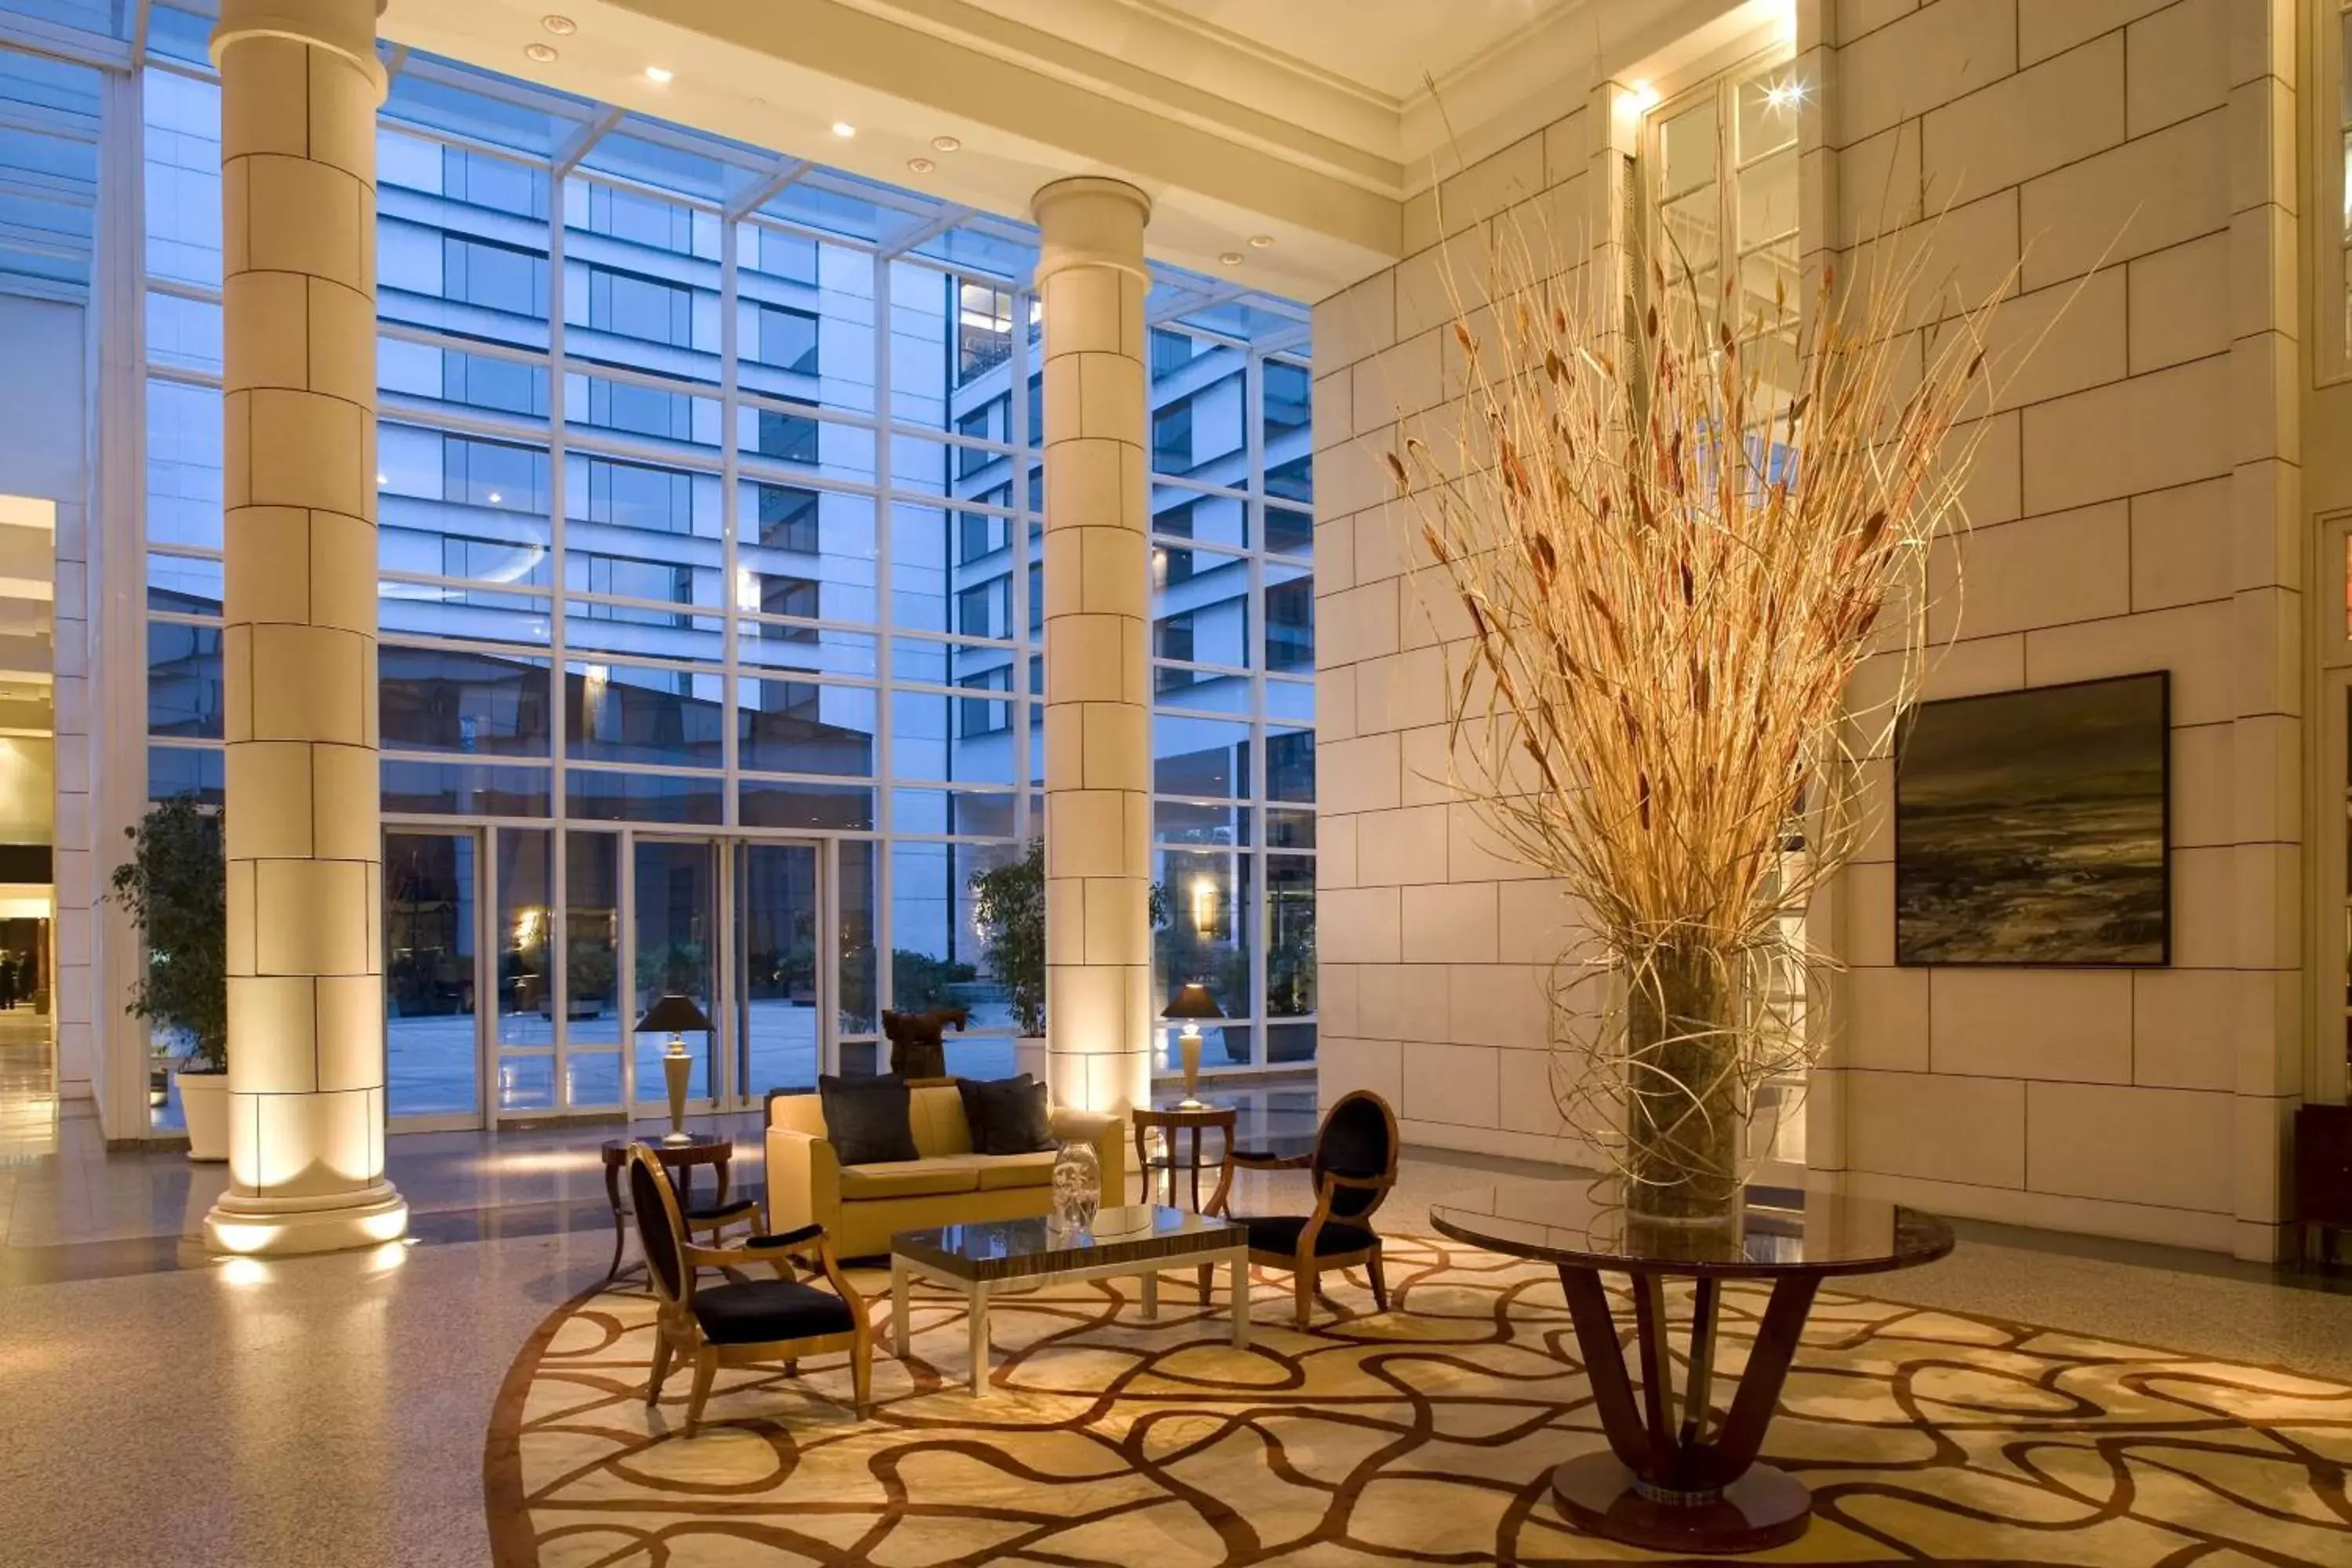 Lobby or reception in Park Hyatt Mendoza Hotel, Casino & Spa